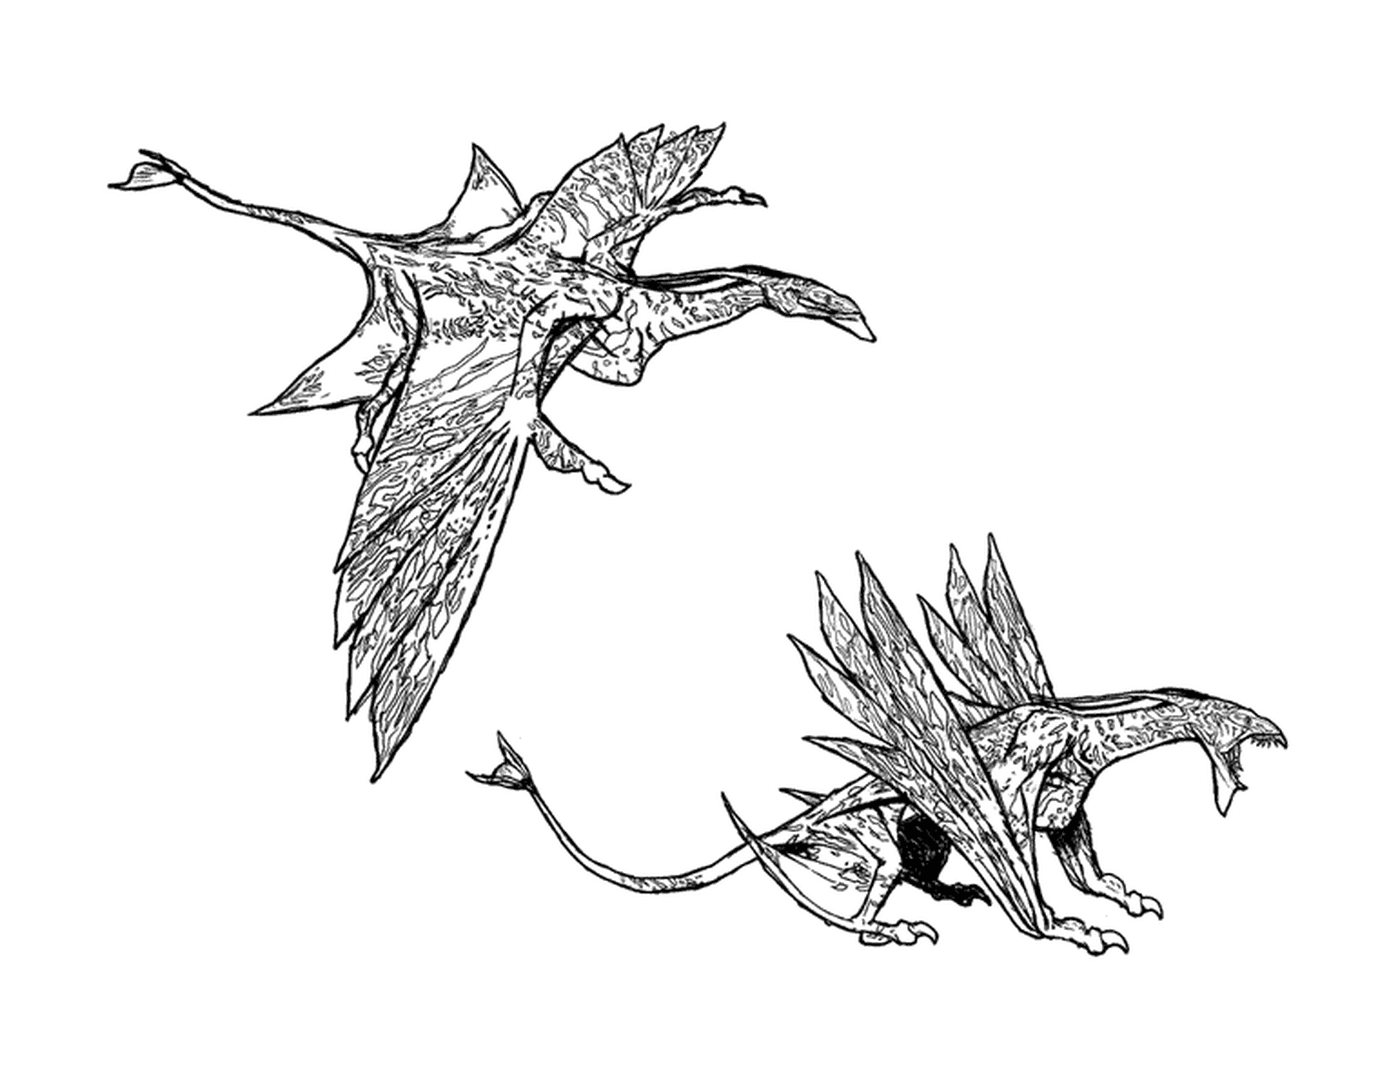  Zwei Zeichnungen eines ausgebreiteten Drachen 